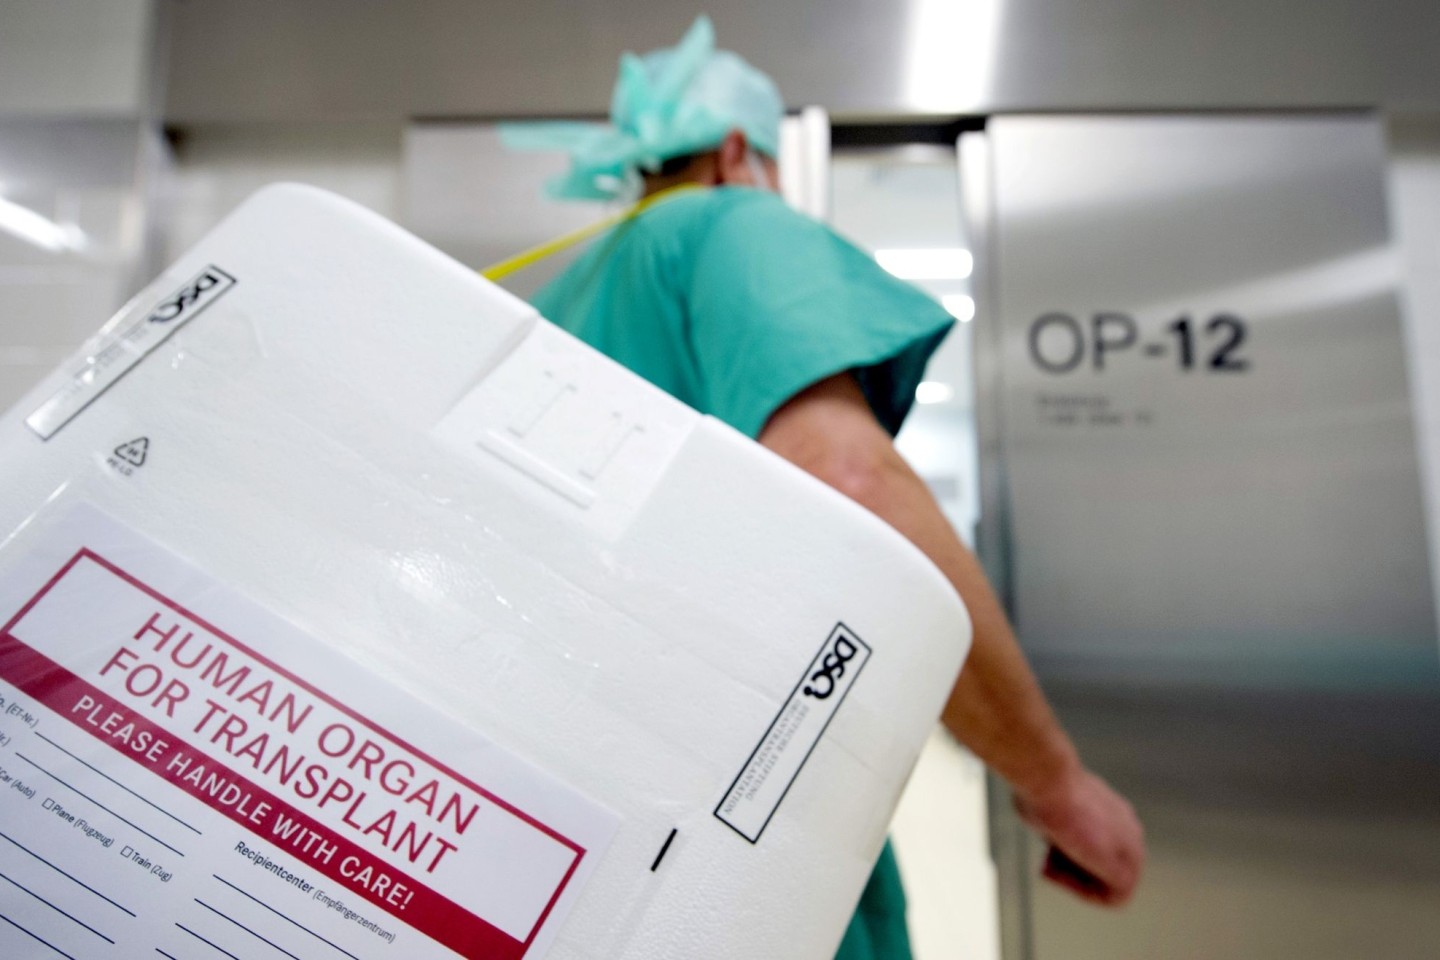 Ein Styropor-Behälter zum Transport von zur Transplantation vorgesehenen Organen am Eingang eines OP-Saales.